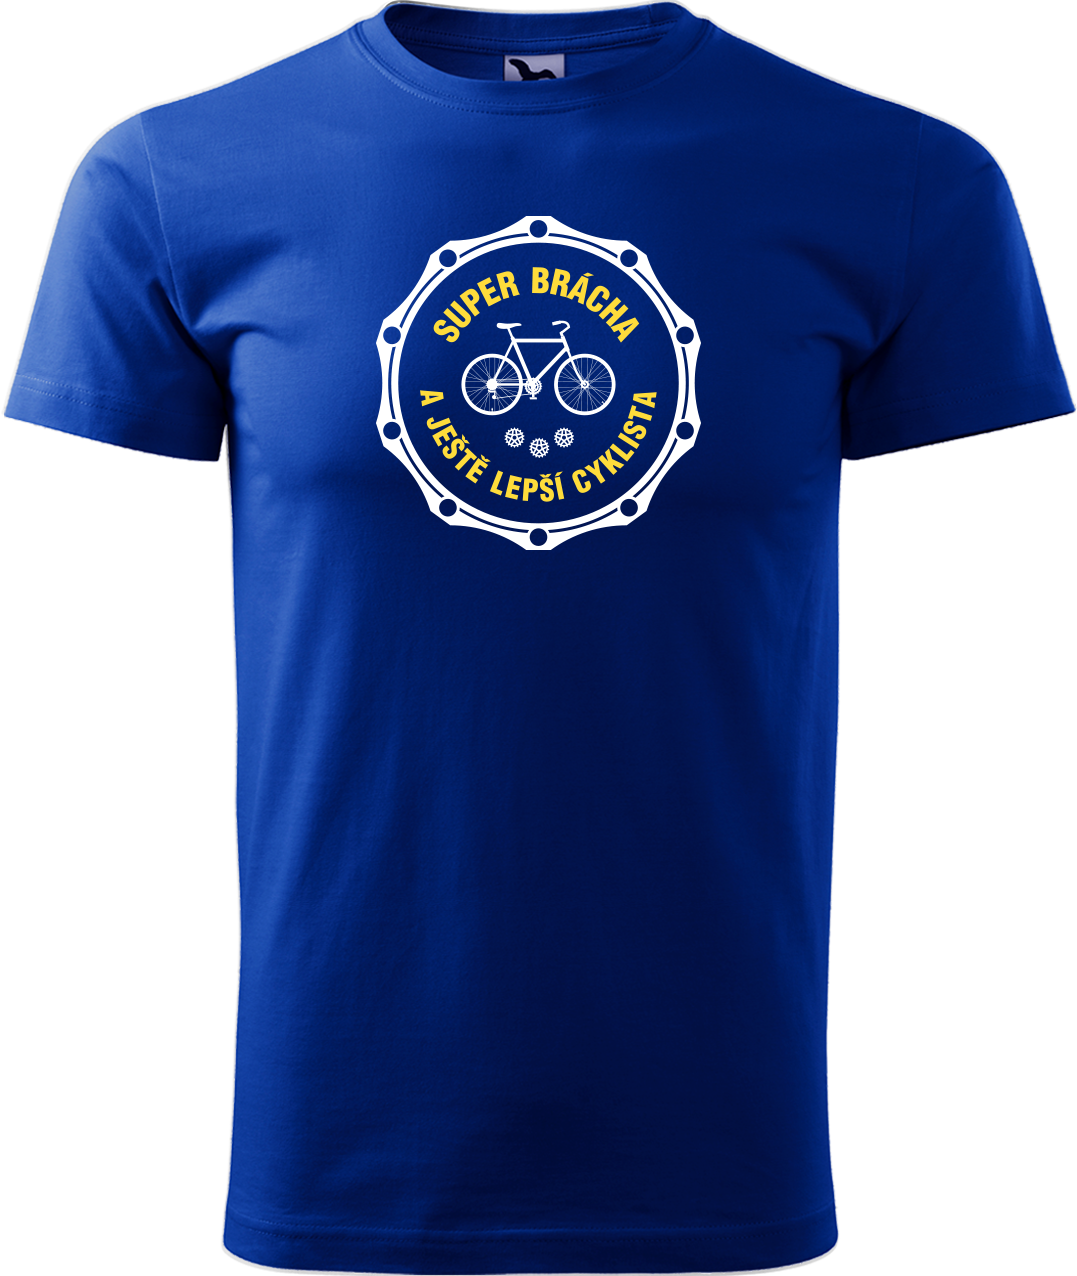 Pánské tričko pro cyklistu - Super brácha a ještě lepší cyklista Velikost: S, Barva: Královská modrá (05)